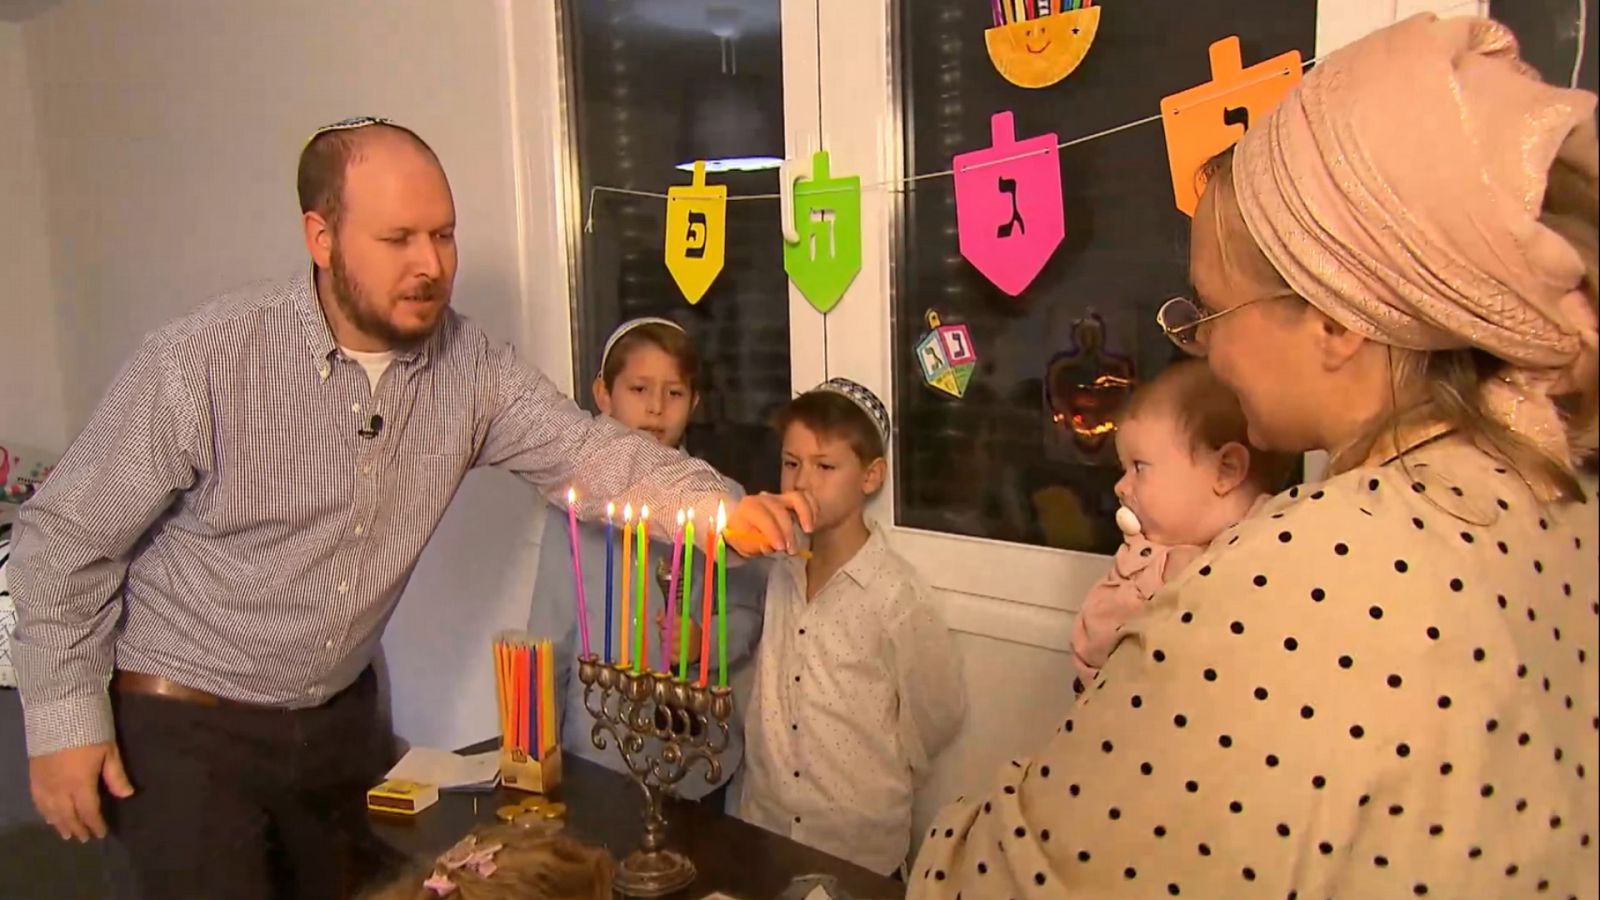 Shalom - Celebramos Januka en familia